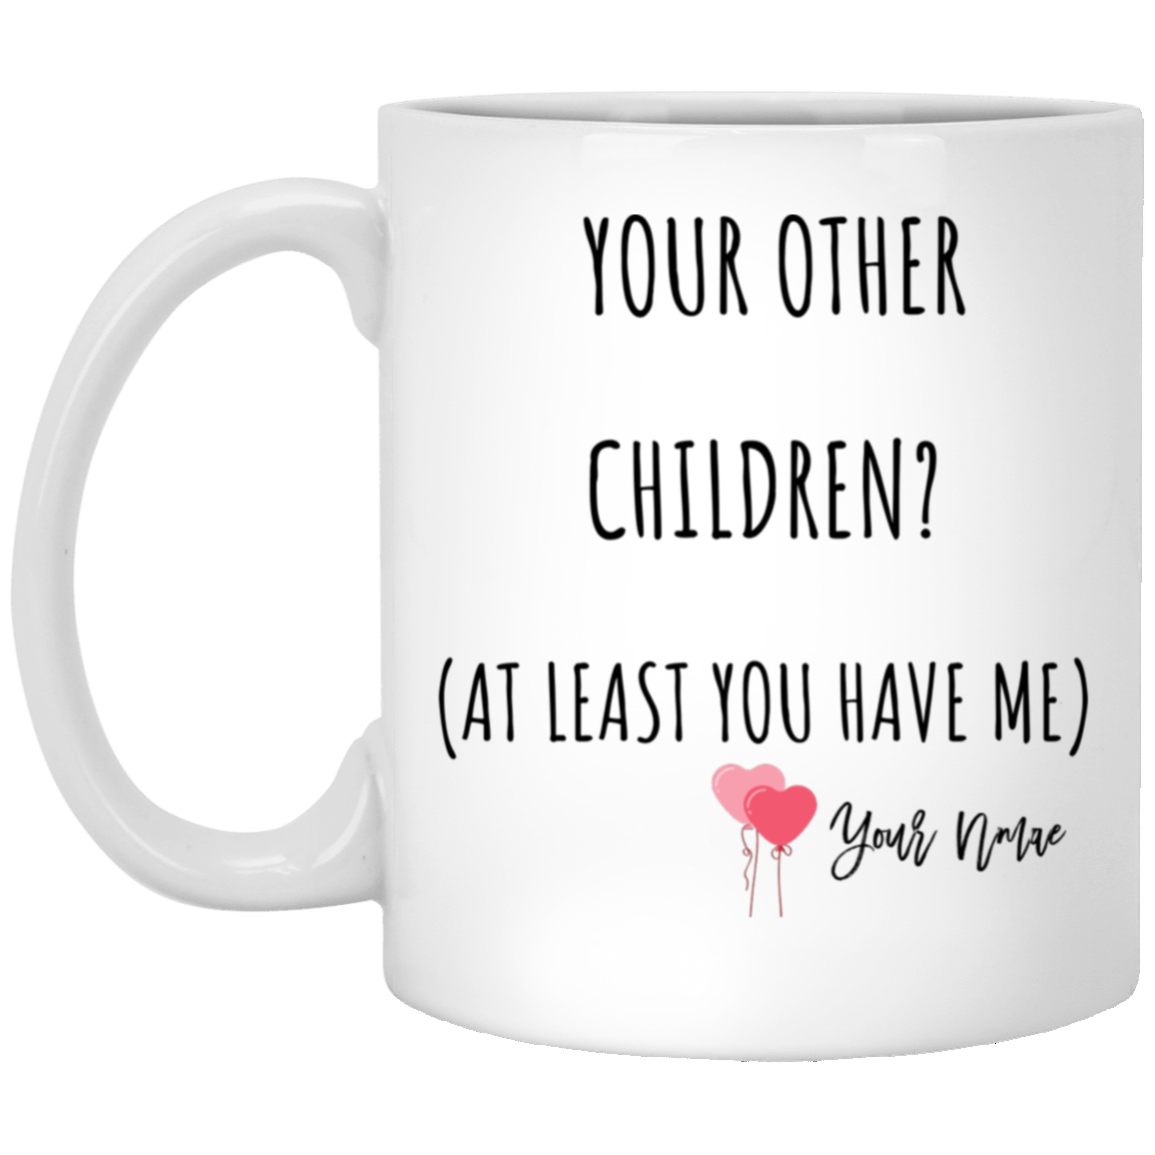 You Have Me Mug - Gift for Mom, Dad